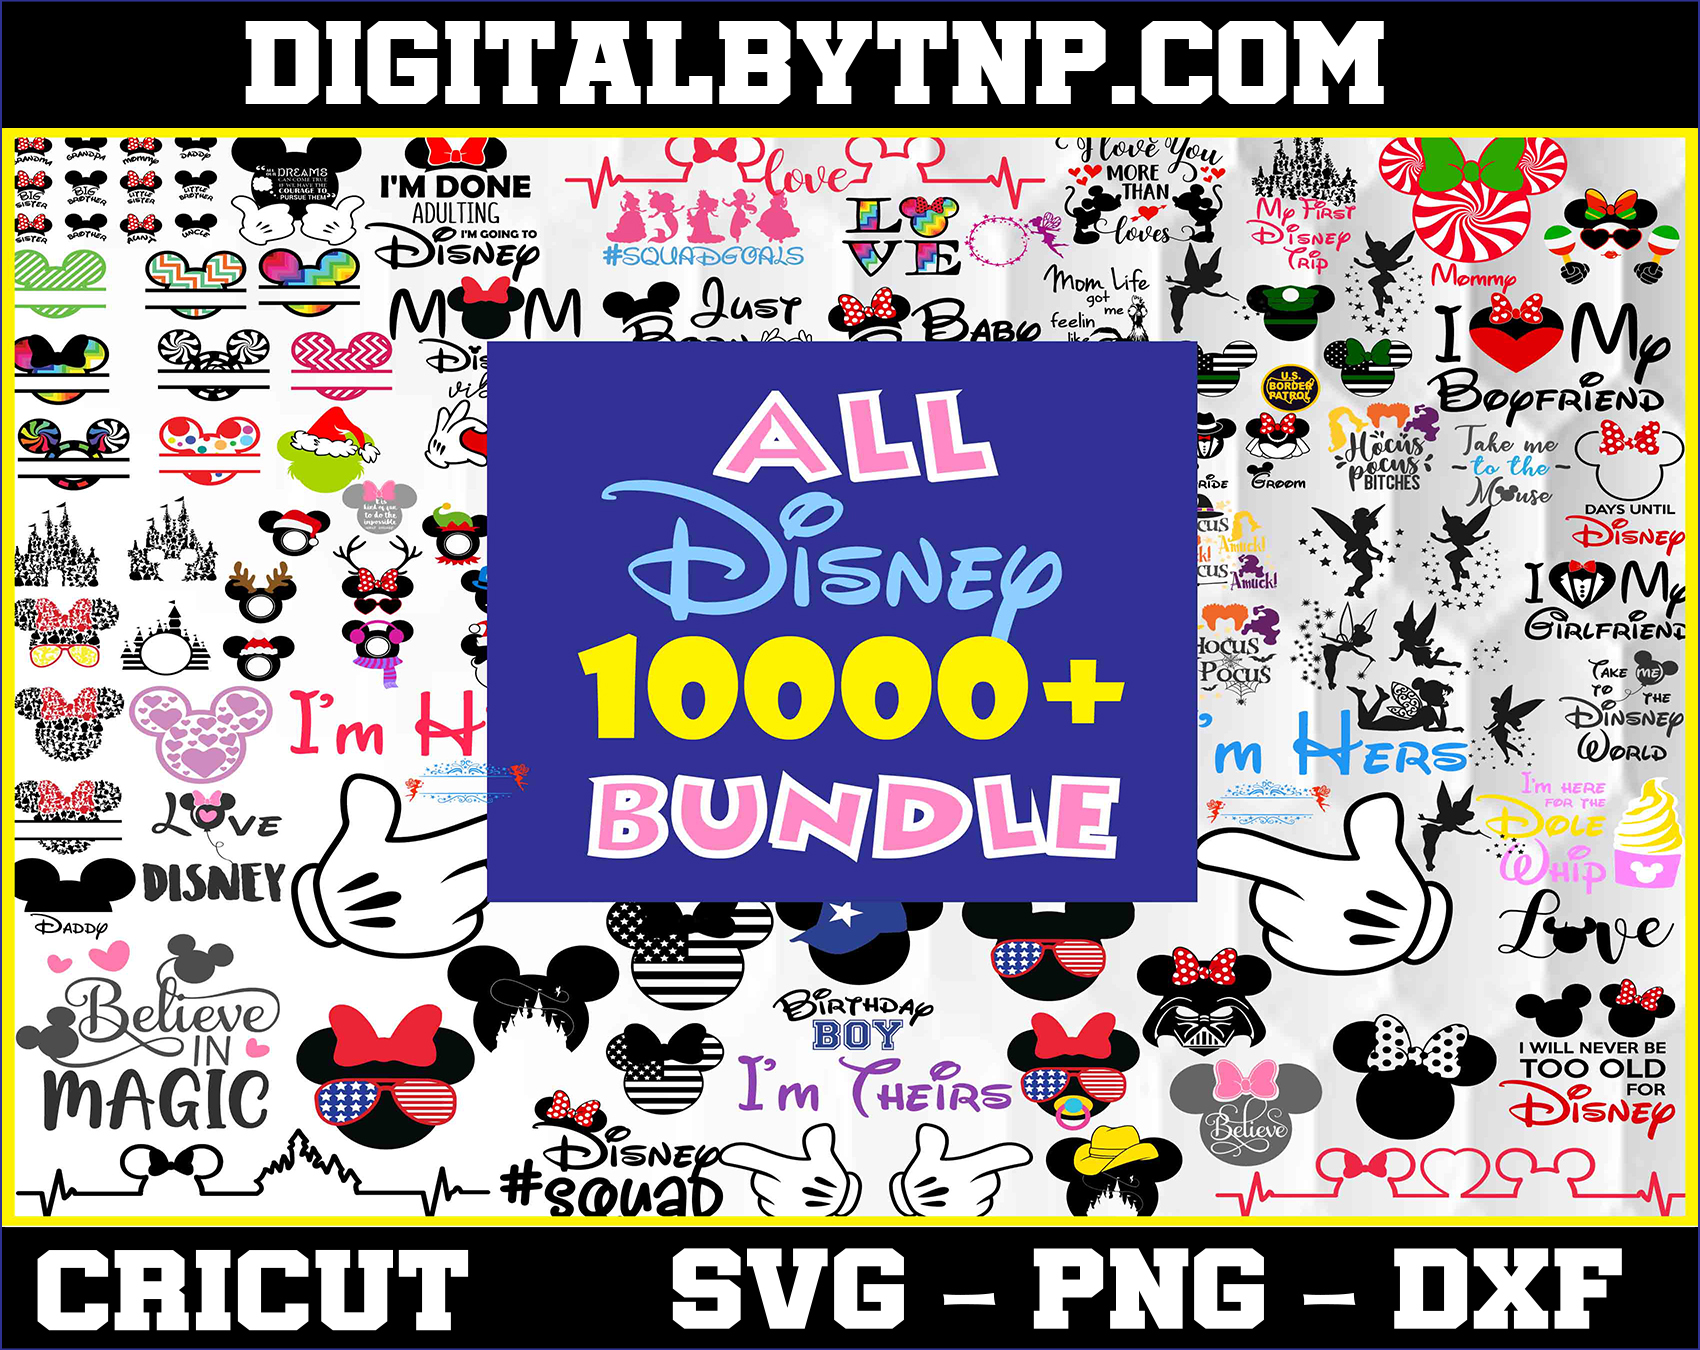 Free Free 213 Disney Svg Mega Bundle SVG PNG EPS DXF File